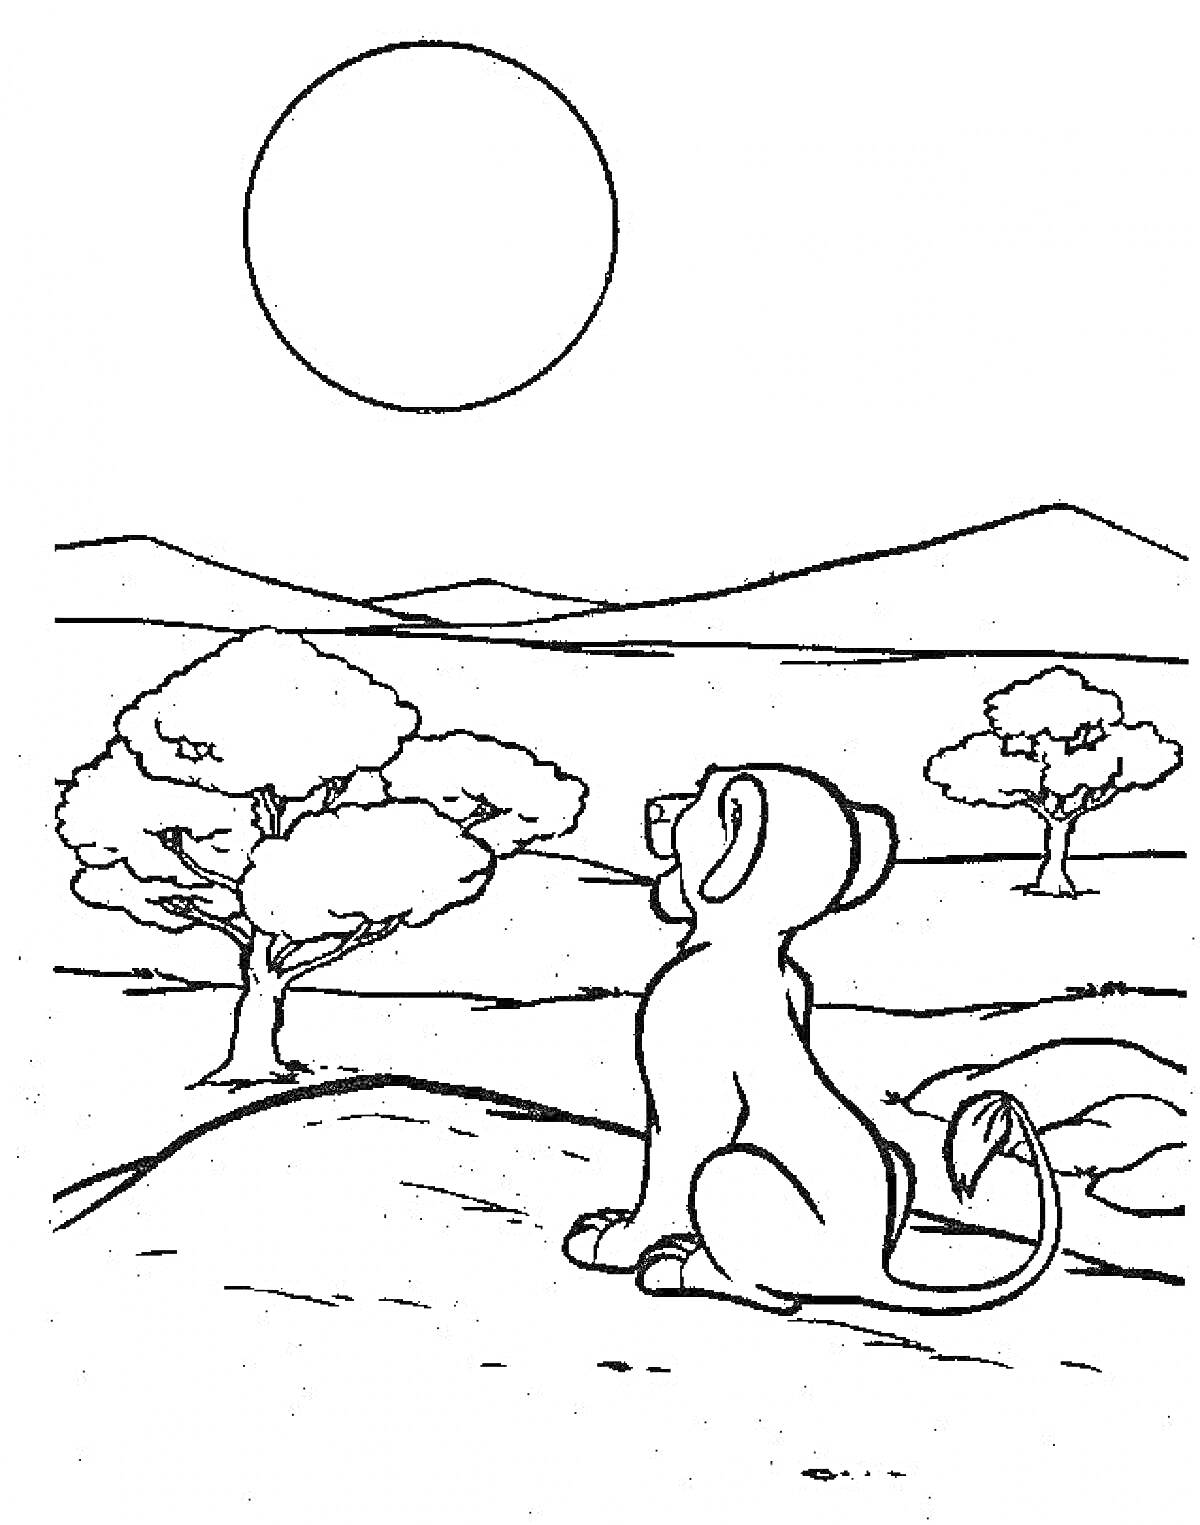 Лев, смотрящий на солнце в саванне, с деревьями на заднем плане и горами вдалеке